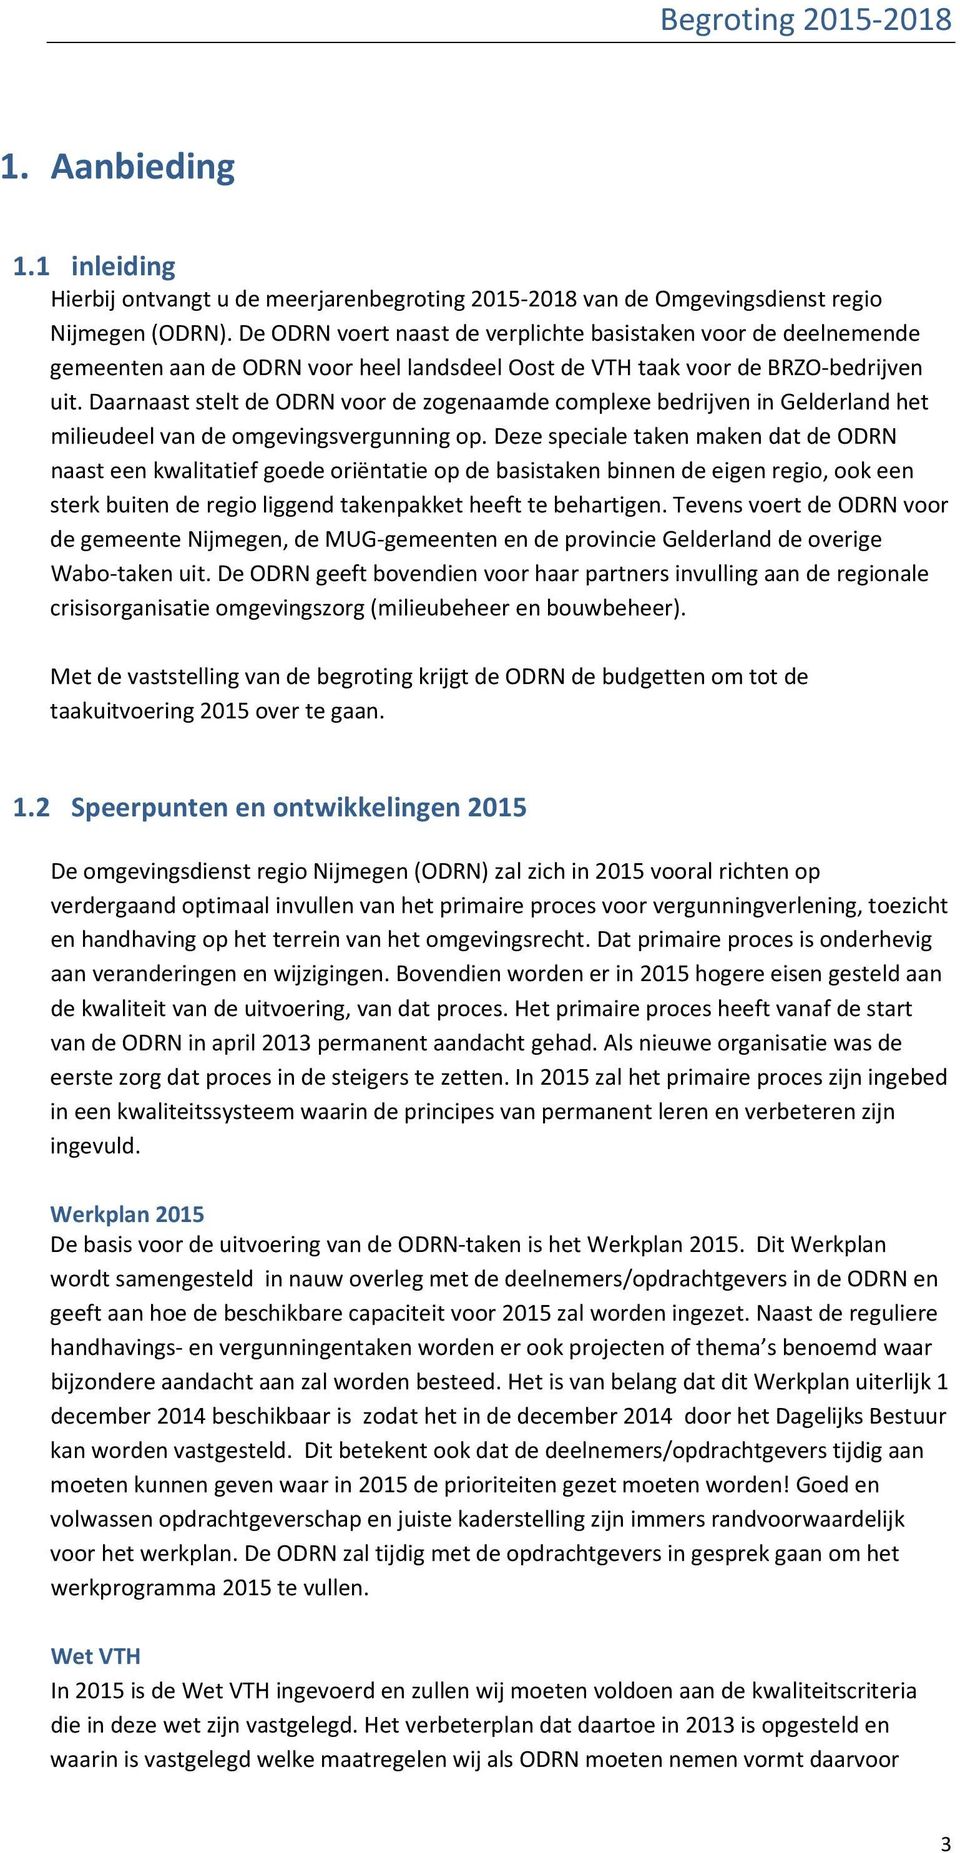 Daarnaast stelt de ODRN voor de zogenaamde complexe bedrijven in Gelderland het milieudeel van de omgevingsvergunning op.